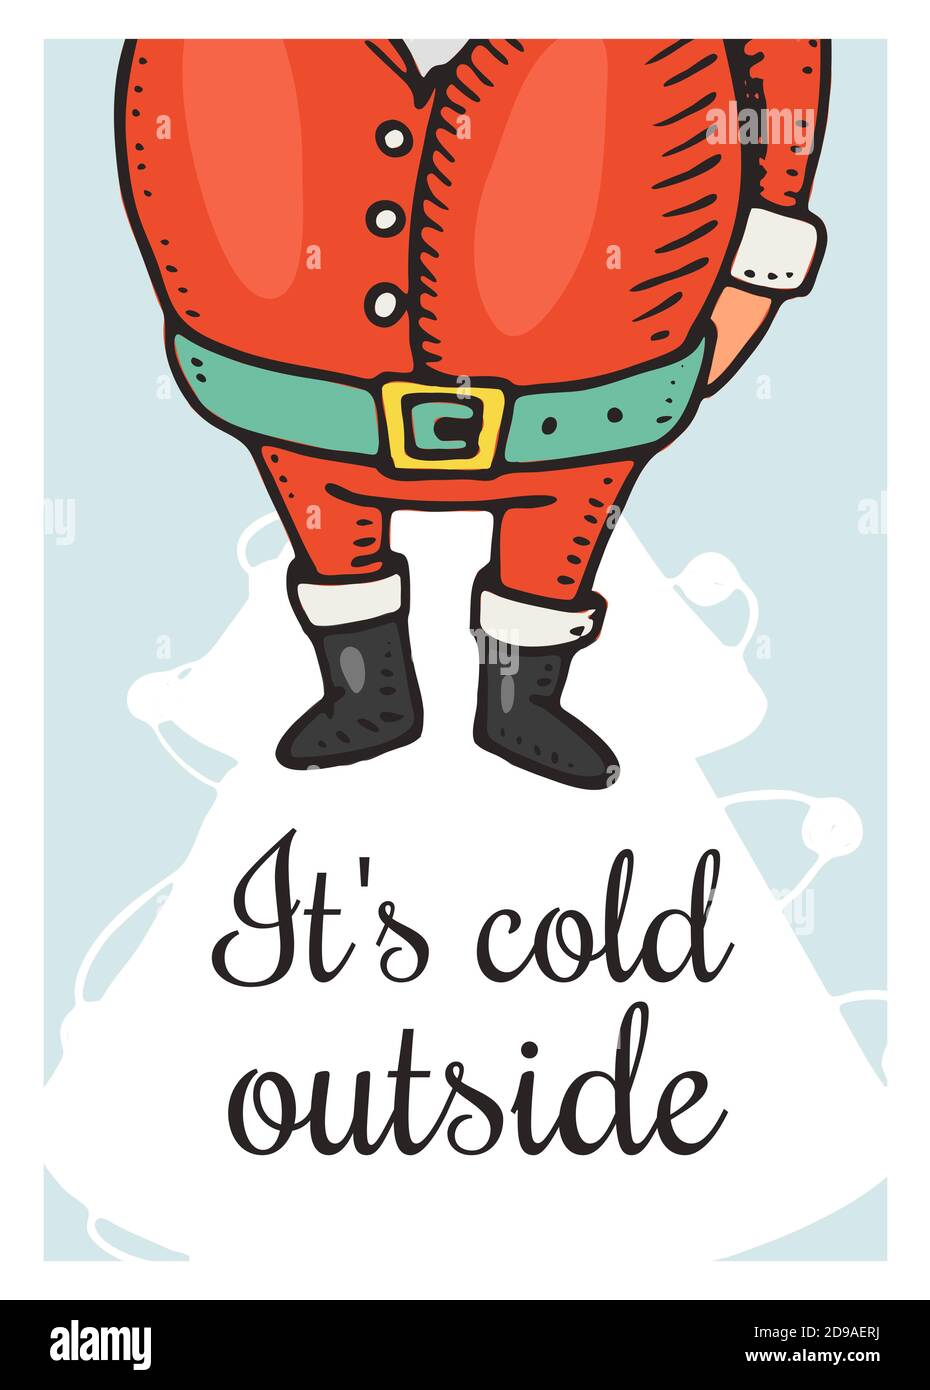 Frohe Weihnachten Banner. New Year Sticky Label. Draußen ist es kalt. Poster-Vorlage. Father Frost oder Santa Claus für Vintage Aufkleber Flyer oder Etiketten Stock Vektor